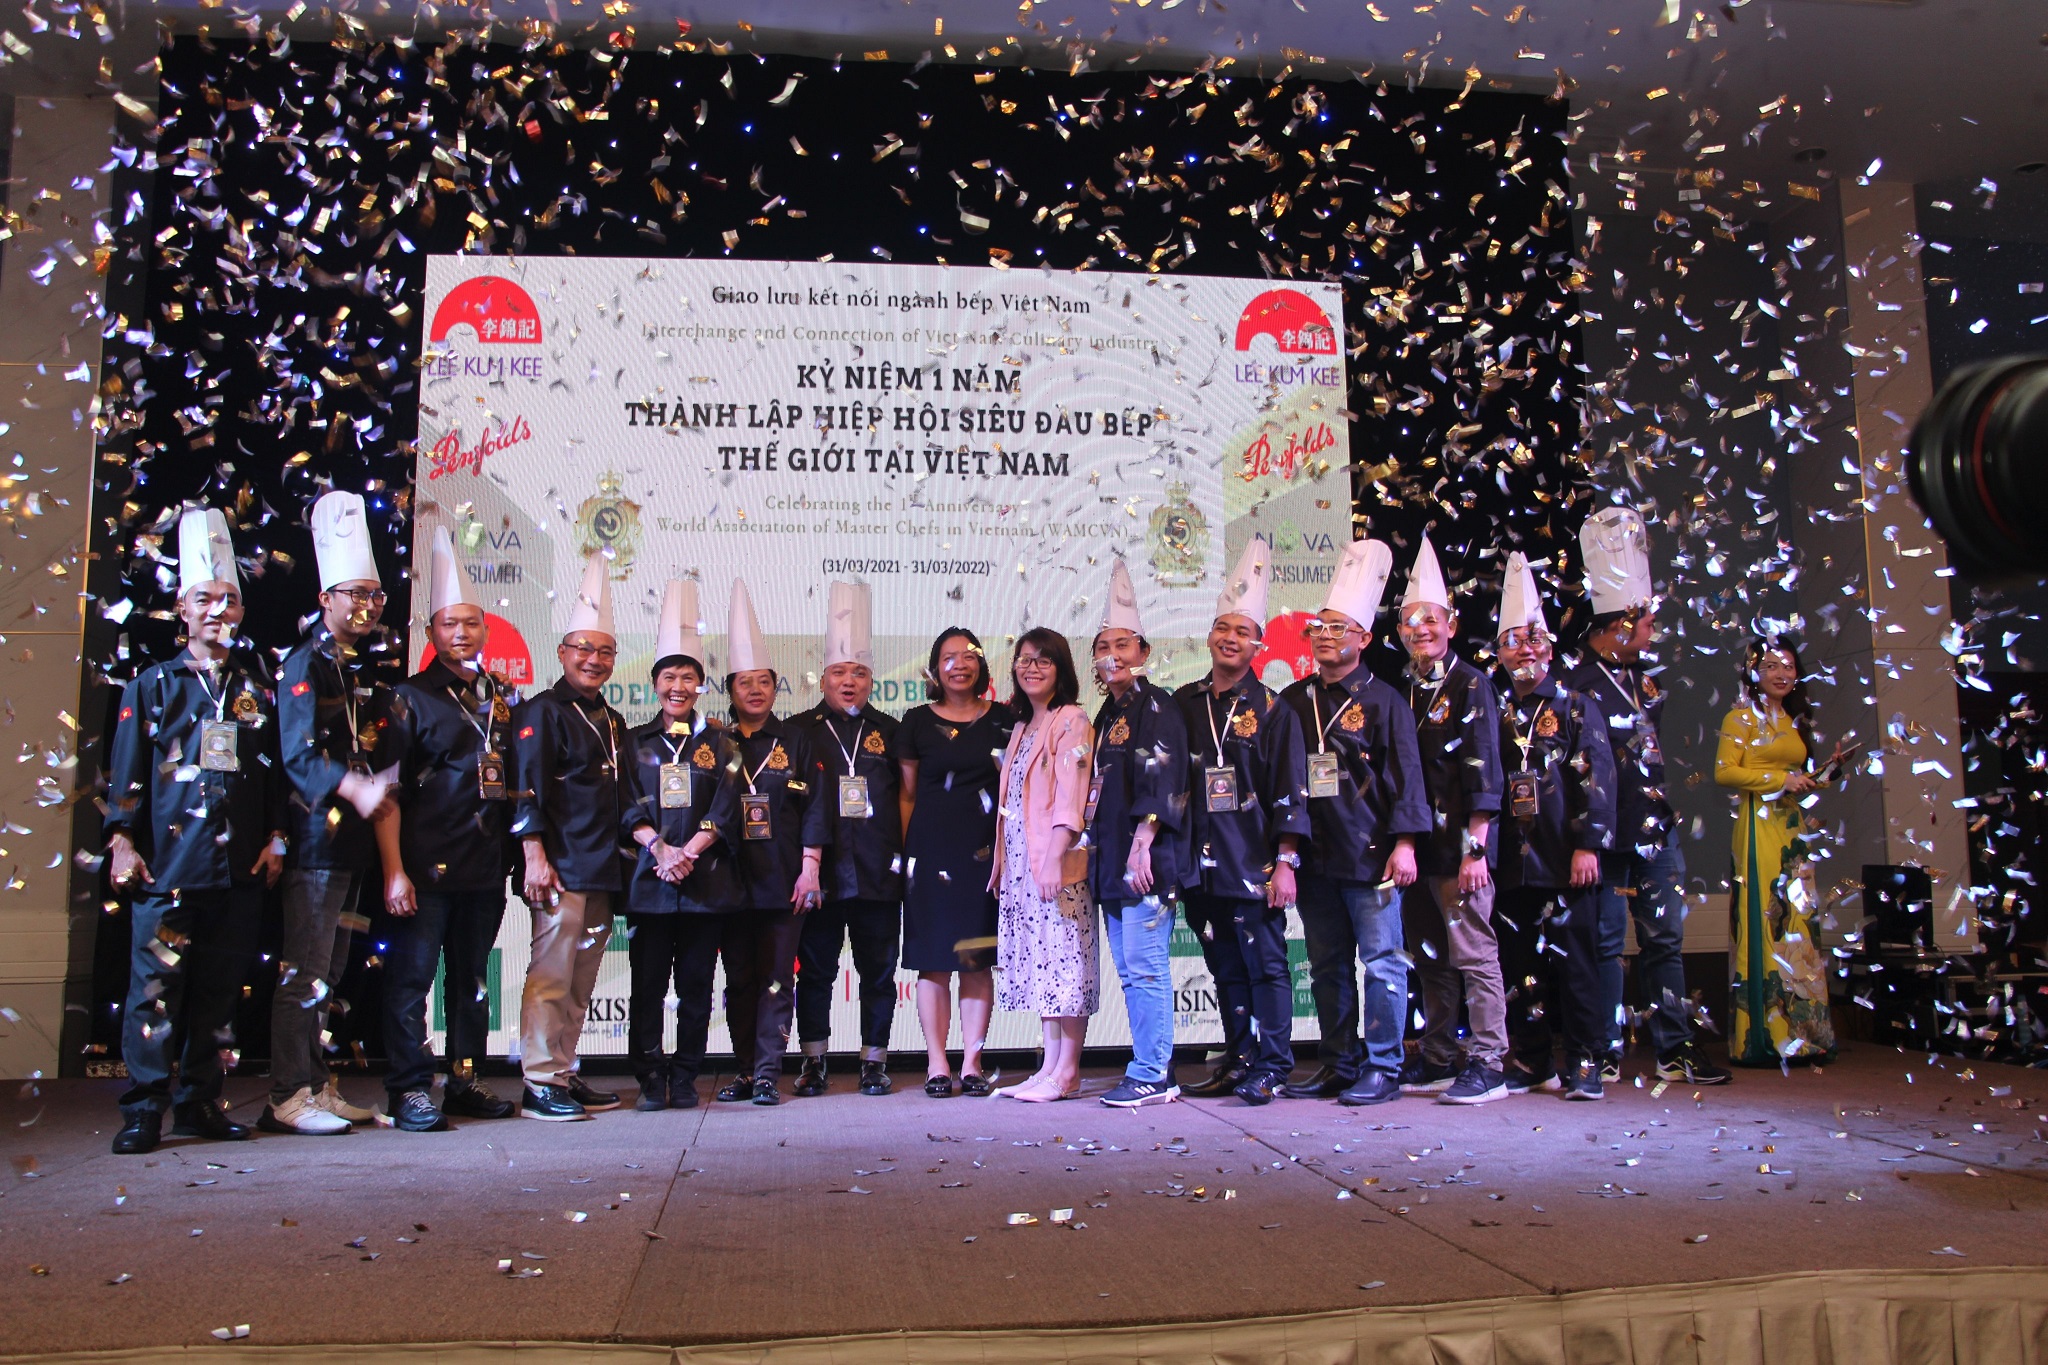 Nova Consumer đồng hành sự kiện "Kỷ niệm 1 năm thành lập Hiệp hội Siêu Đầu bếp Thế giới tại Việt Nam"